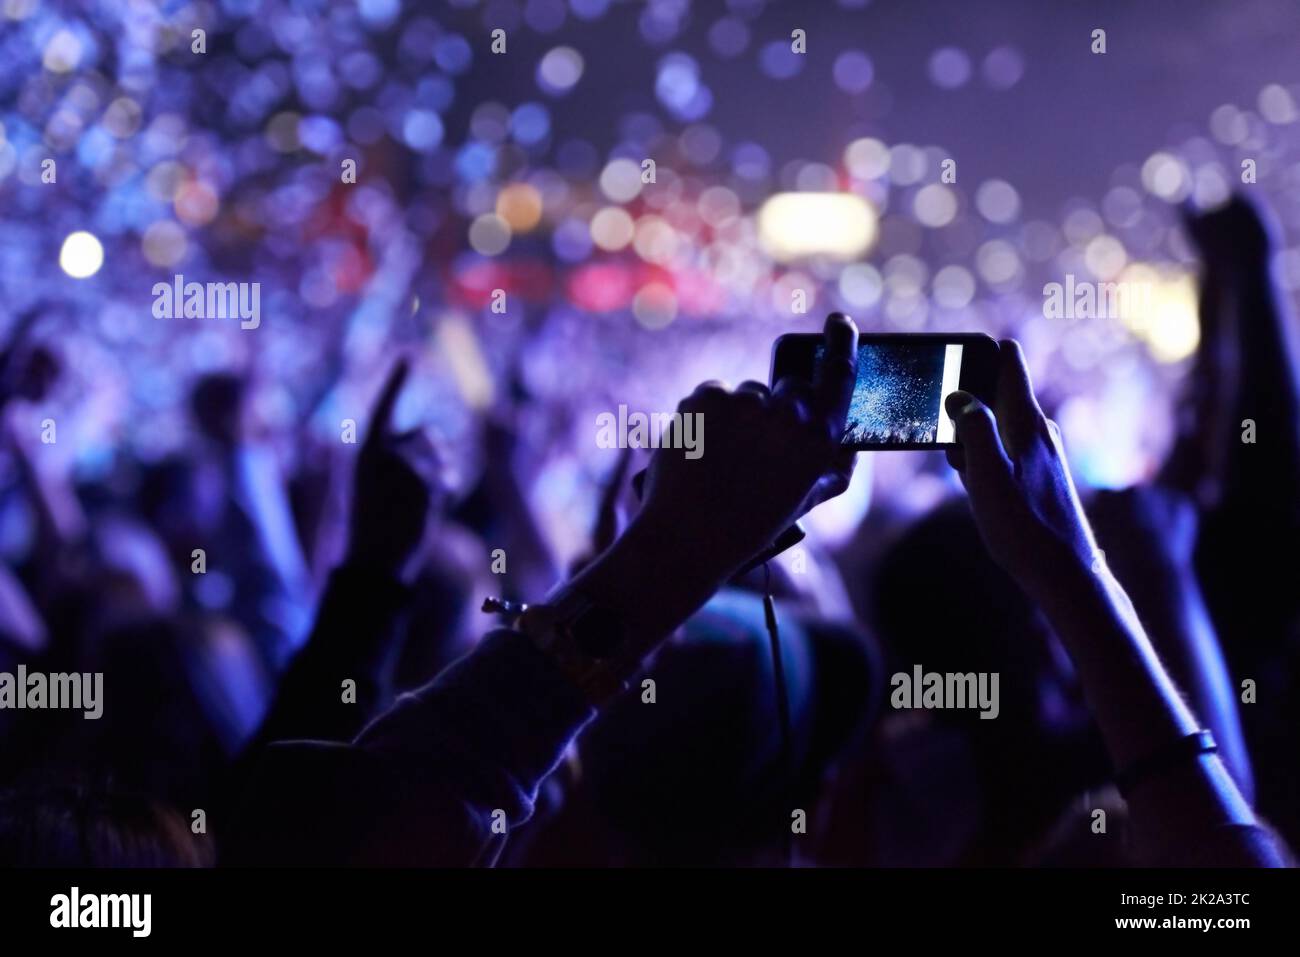 N'oubliez jamais ce moment. Un membre du public qui prend une photo de la foule lors d'un festival de musique. Banque D'Images